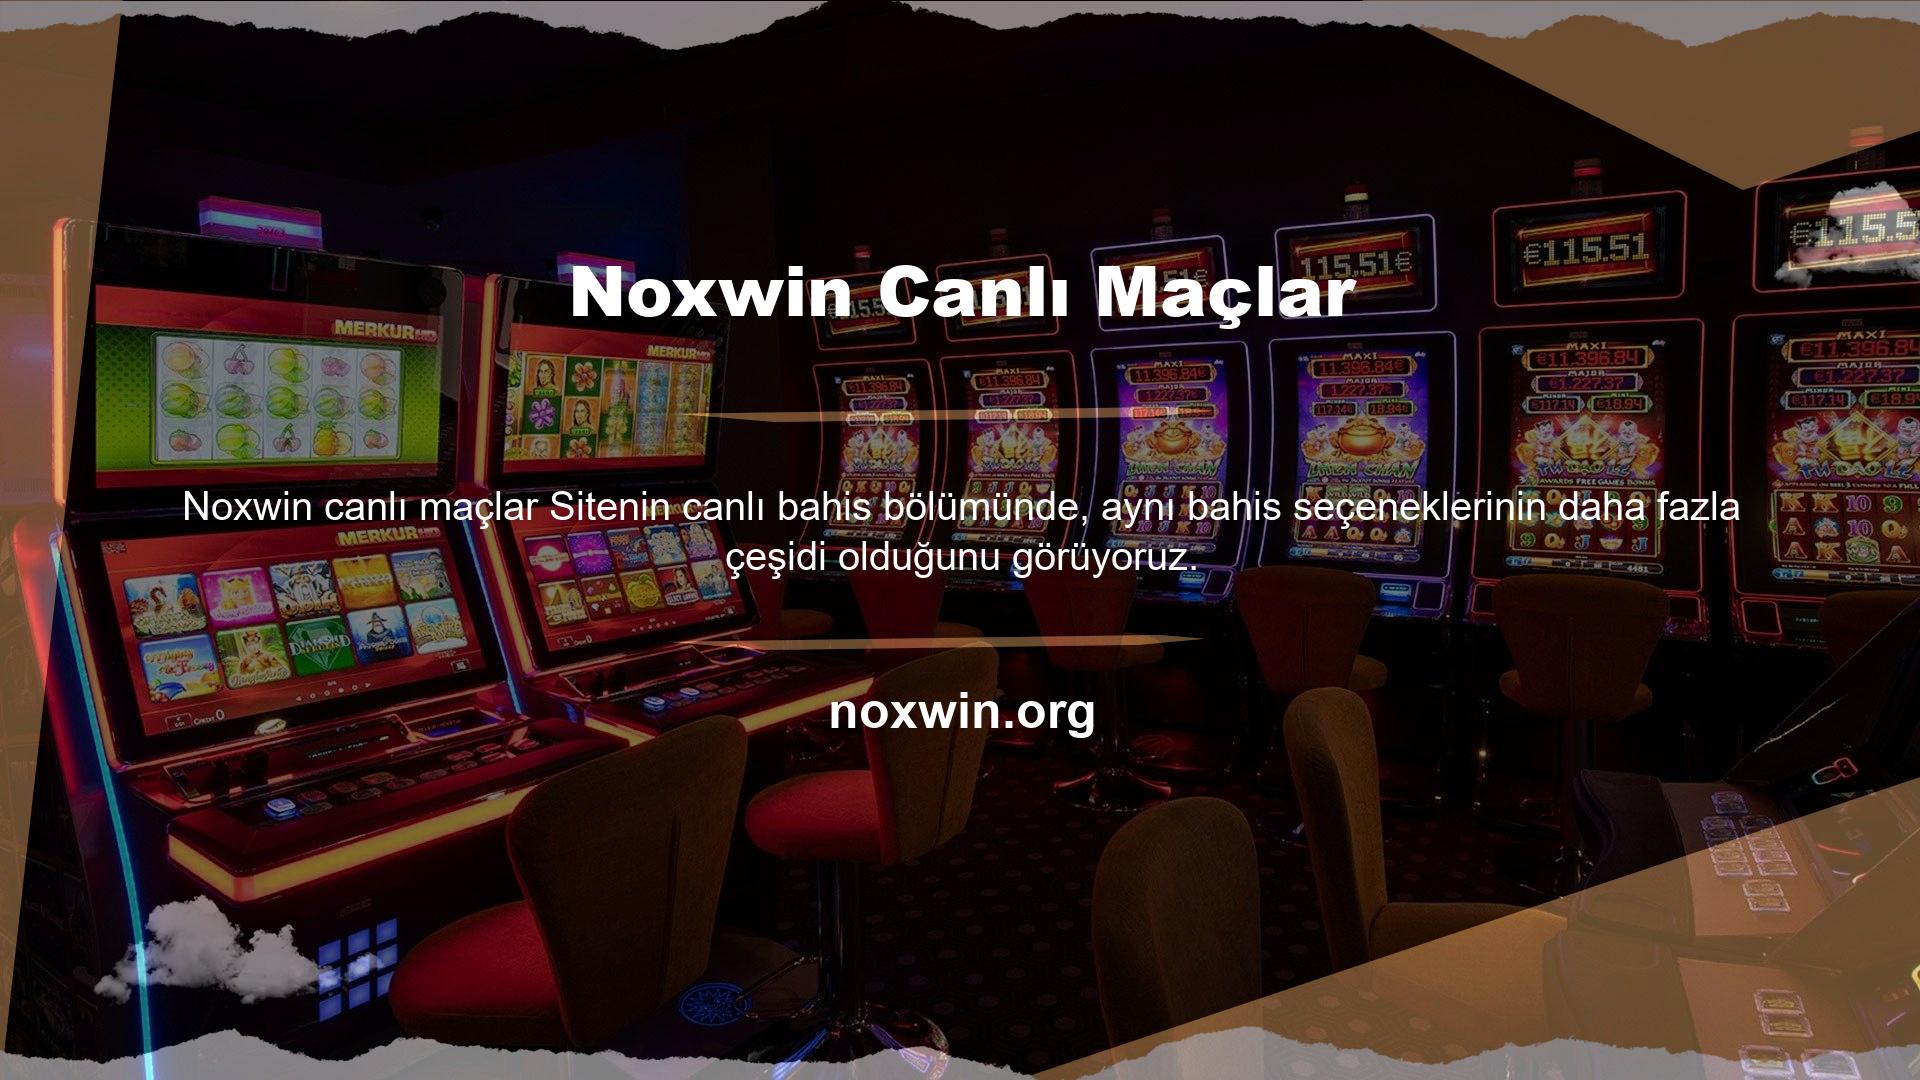 Buradan da görüleceği üzere Noxwin tarafından oynanan oyunun canlı yayını tamamen oyunun canlı yayını şeklinde olmasa da aslında bir canlı simülasyon yorum servisi üzerinden sunulmaktadır